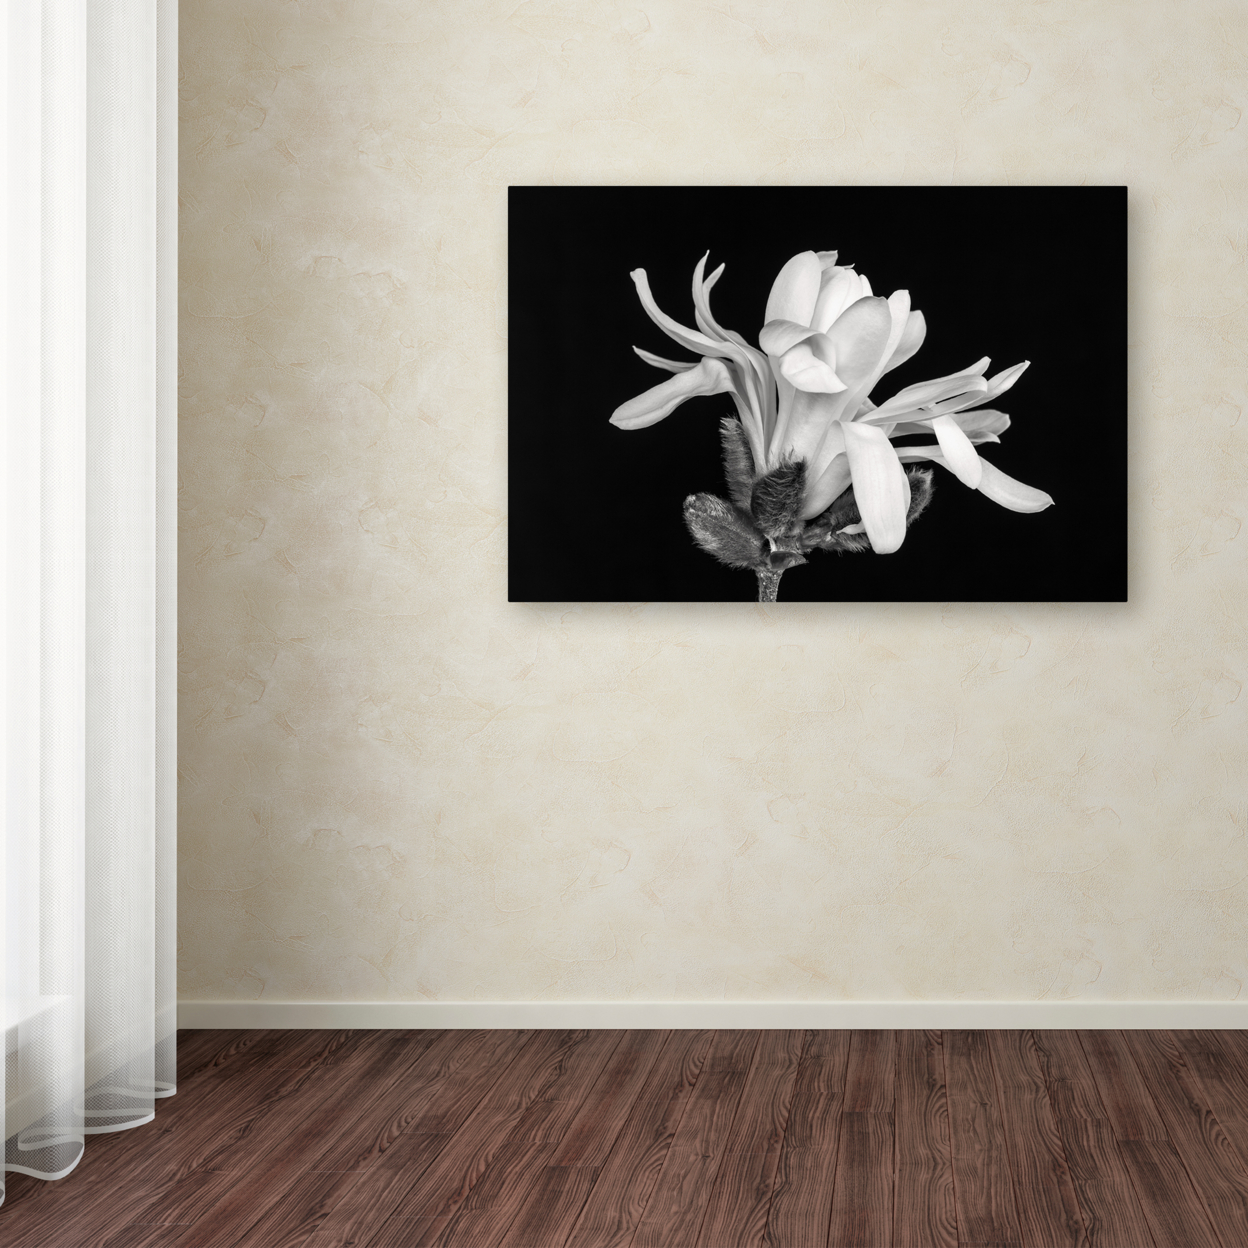 Pierre Leclerc 'Magnolia Flower' Canvas Art 16 X 24